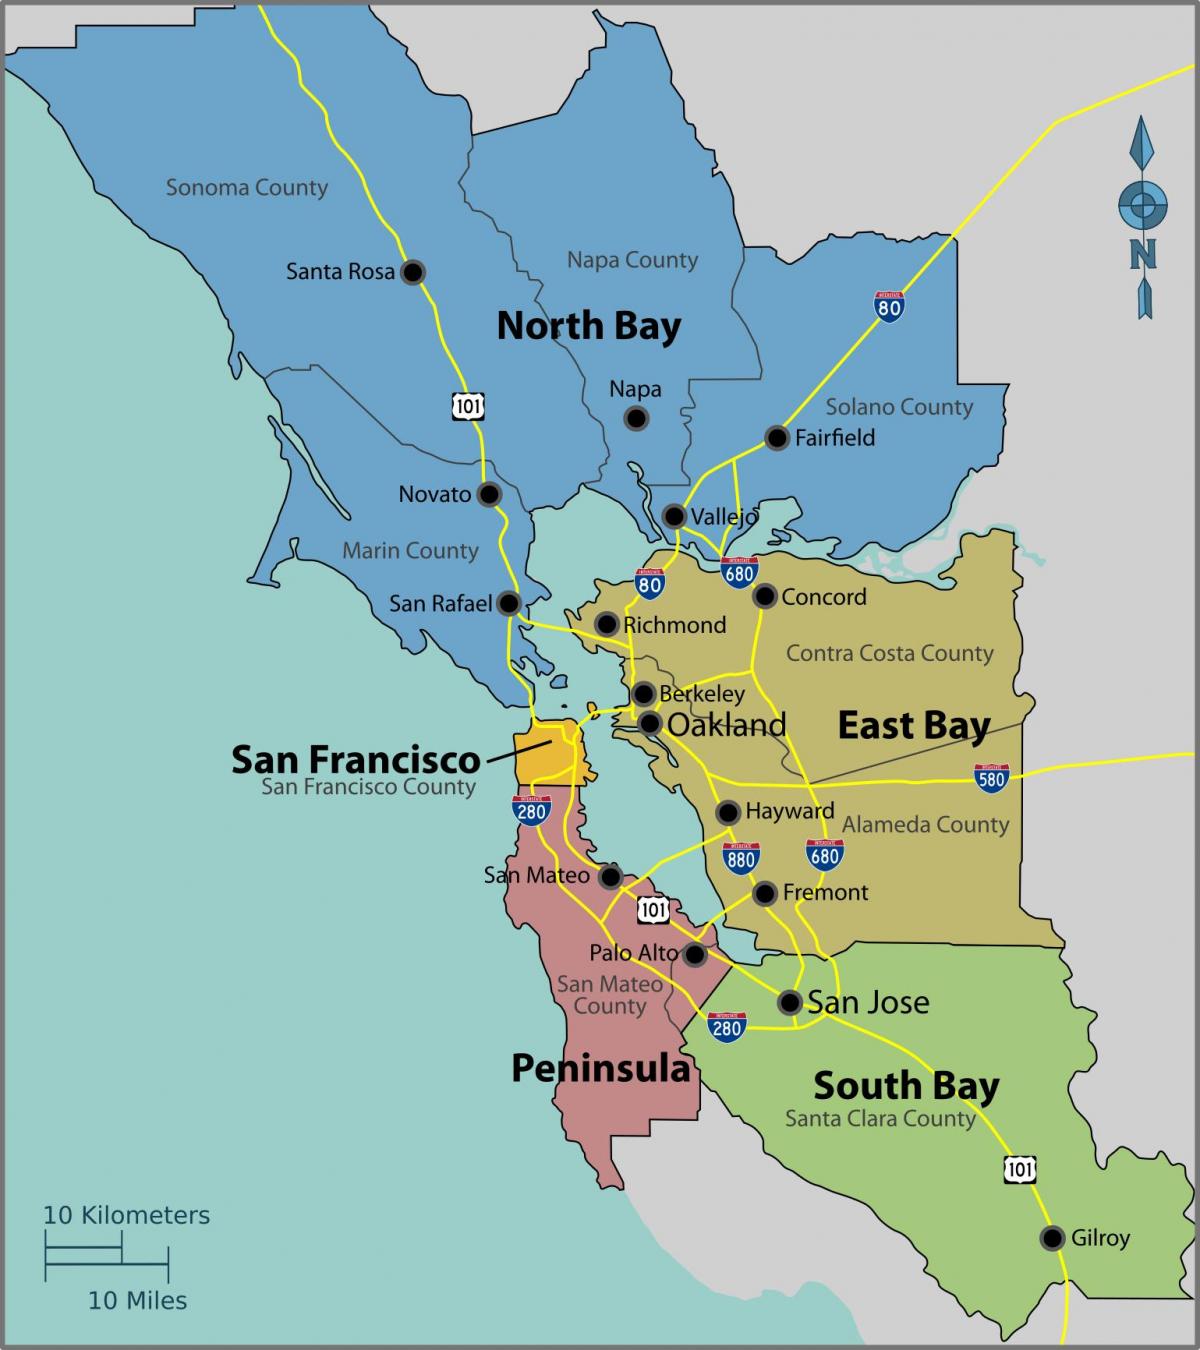 Сан-Франциско на мапи